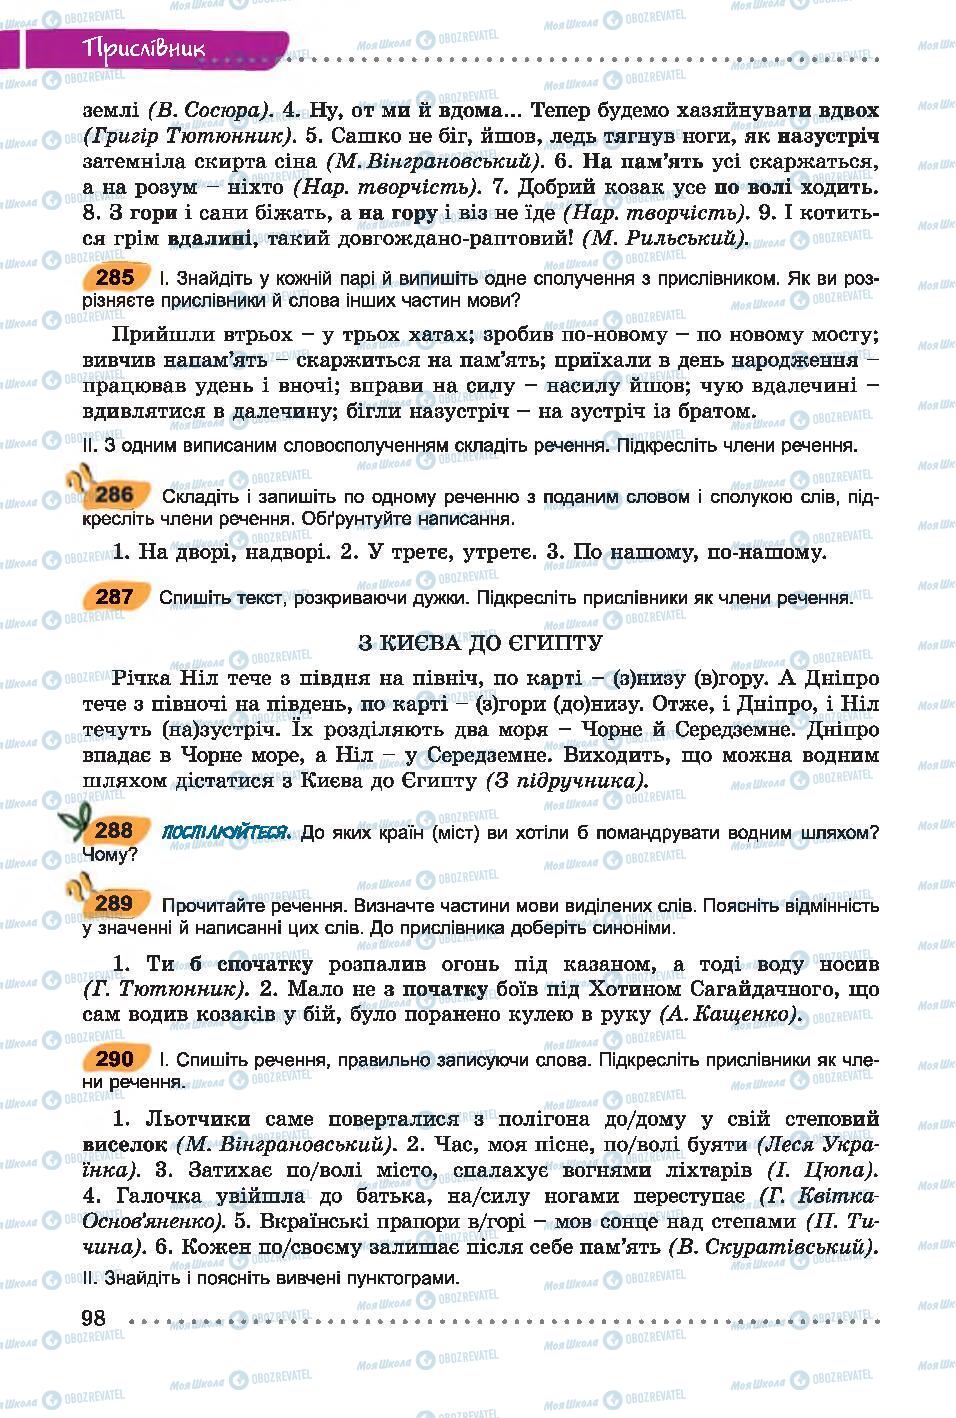 Підручники Українська мова 7 клас сторінка 98